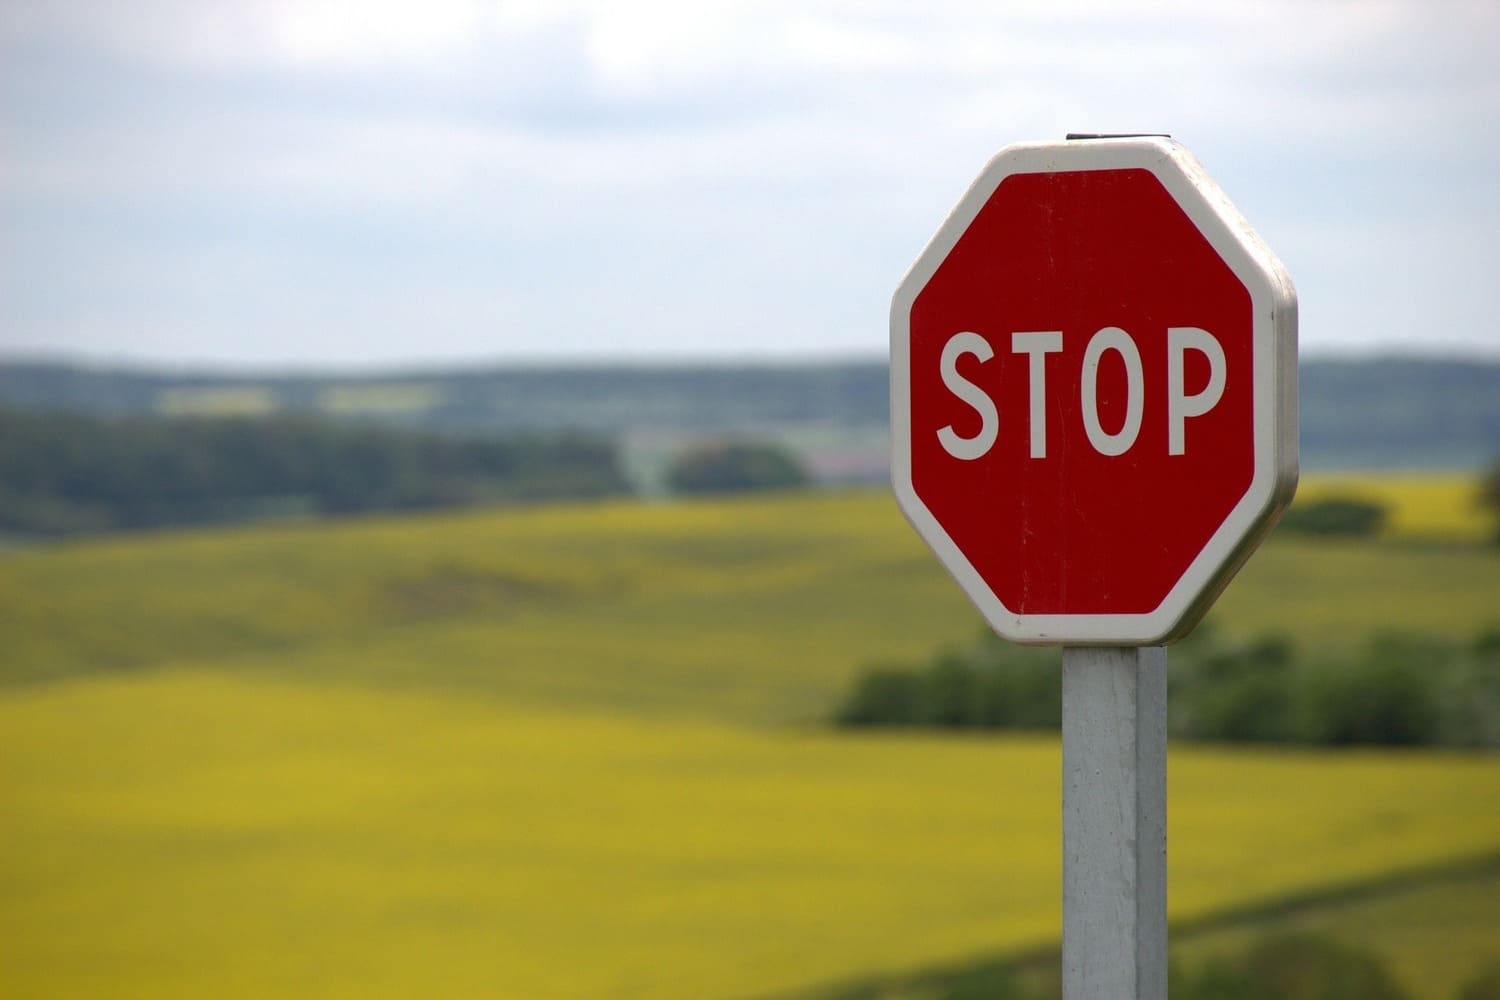 Nuestra atención focalizada nos ayuda a detectar una señal de stop